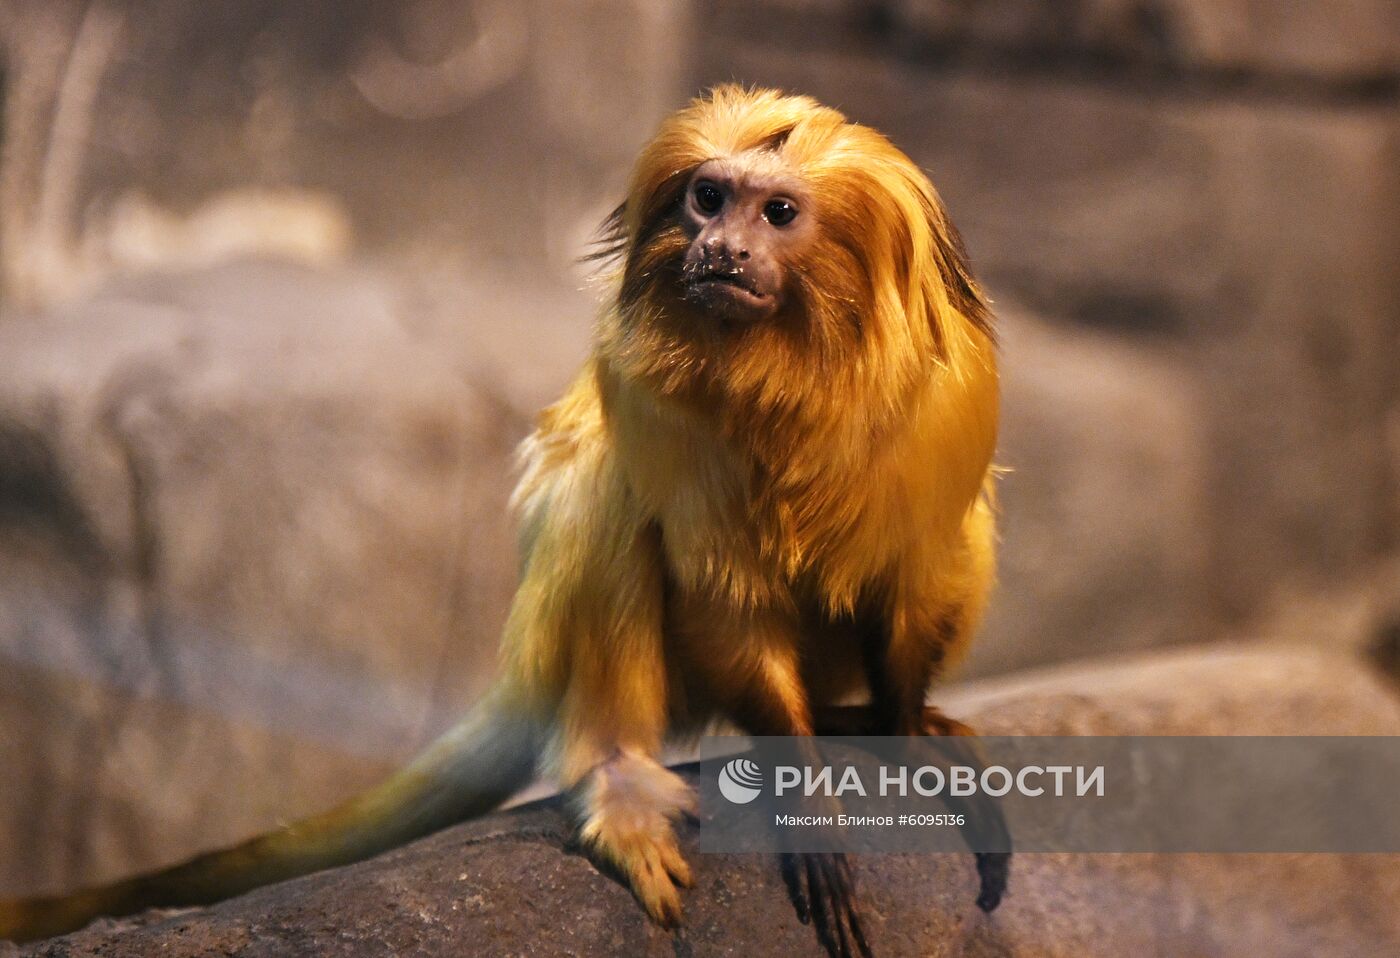 Редкие тамарины появились в Московском зоопарке